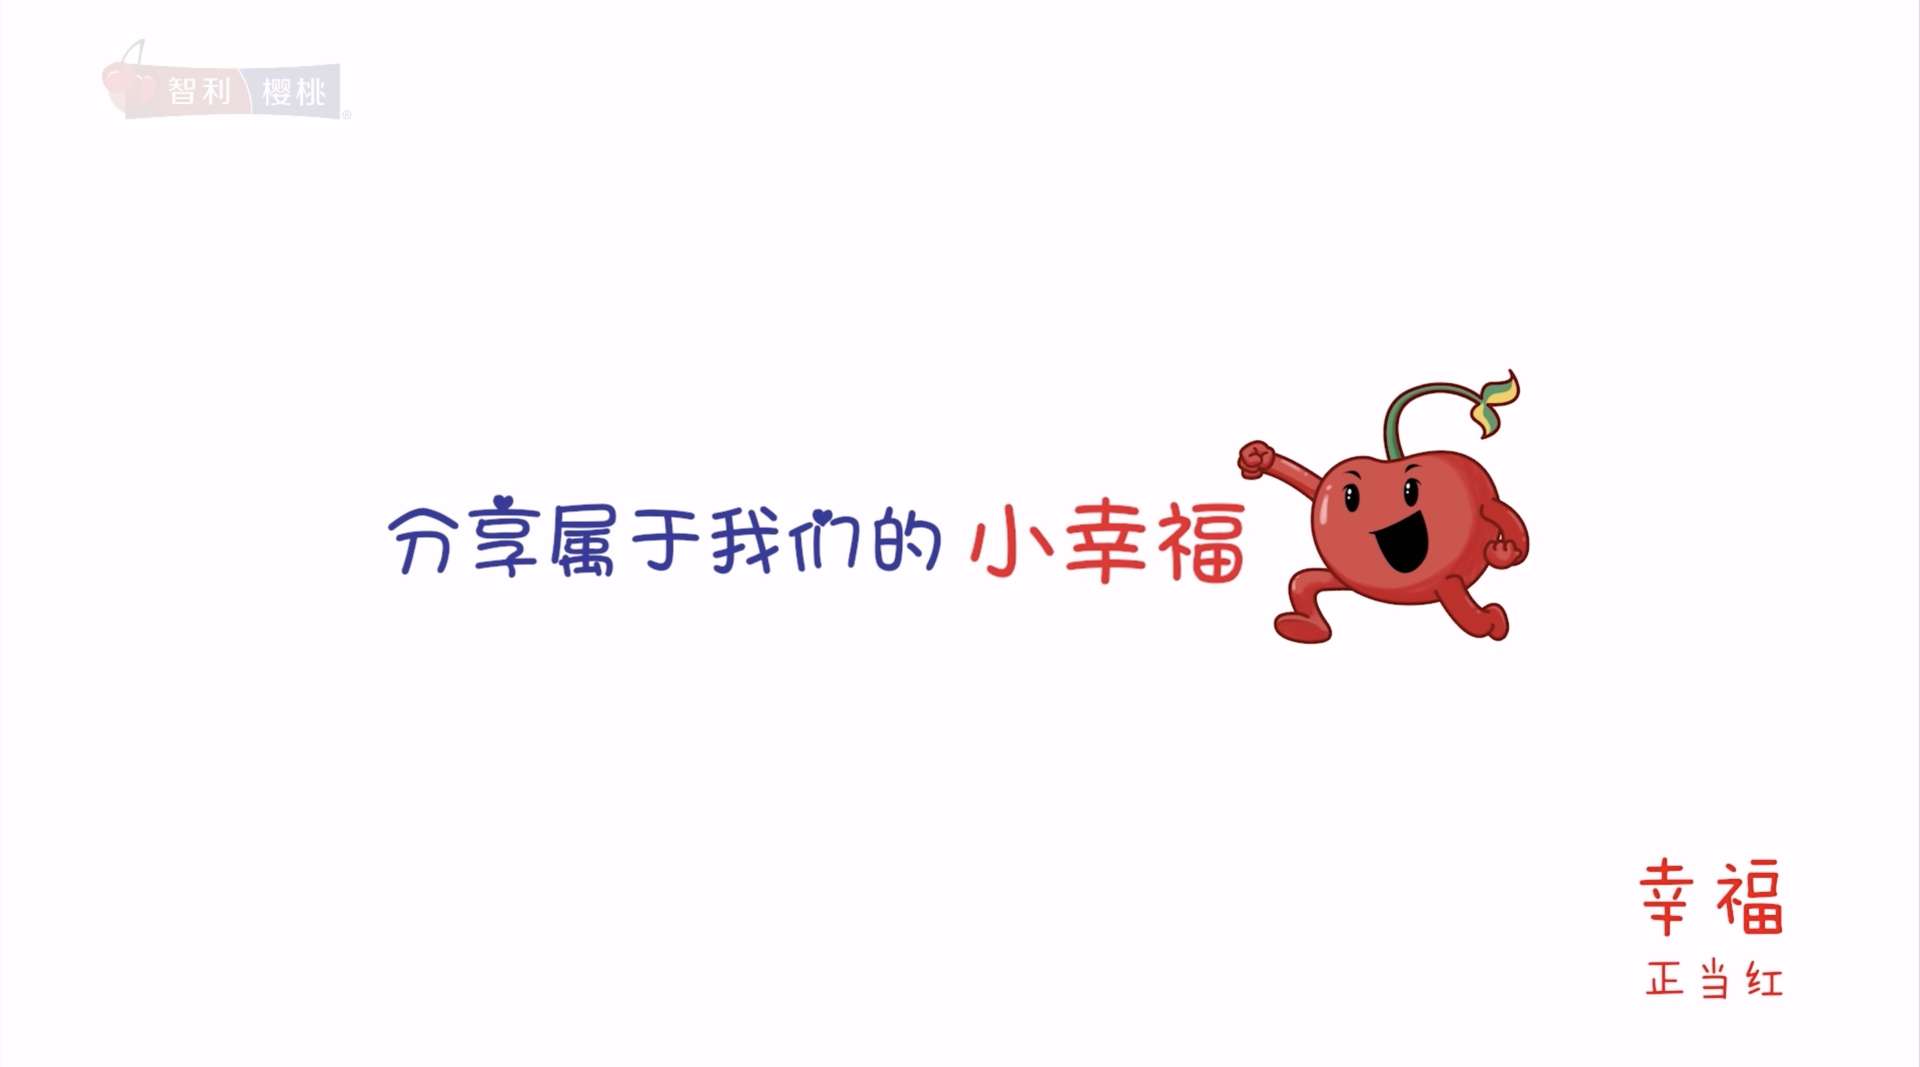 智利樱桃广告《记录生活中的幸福红》